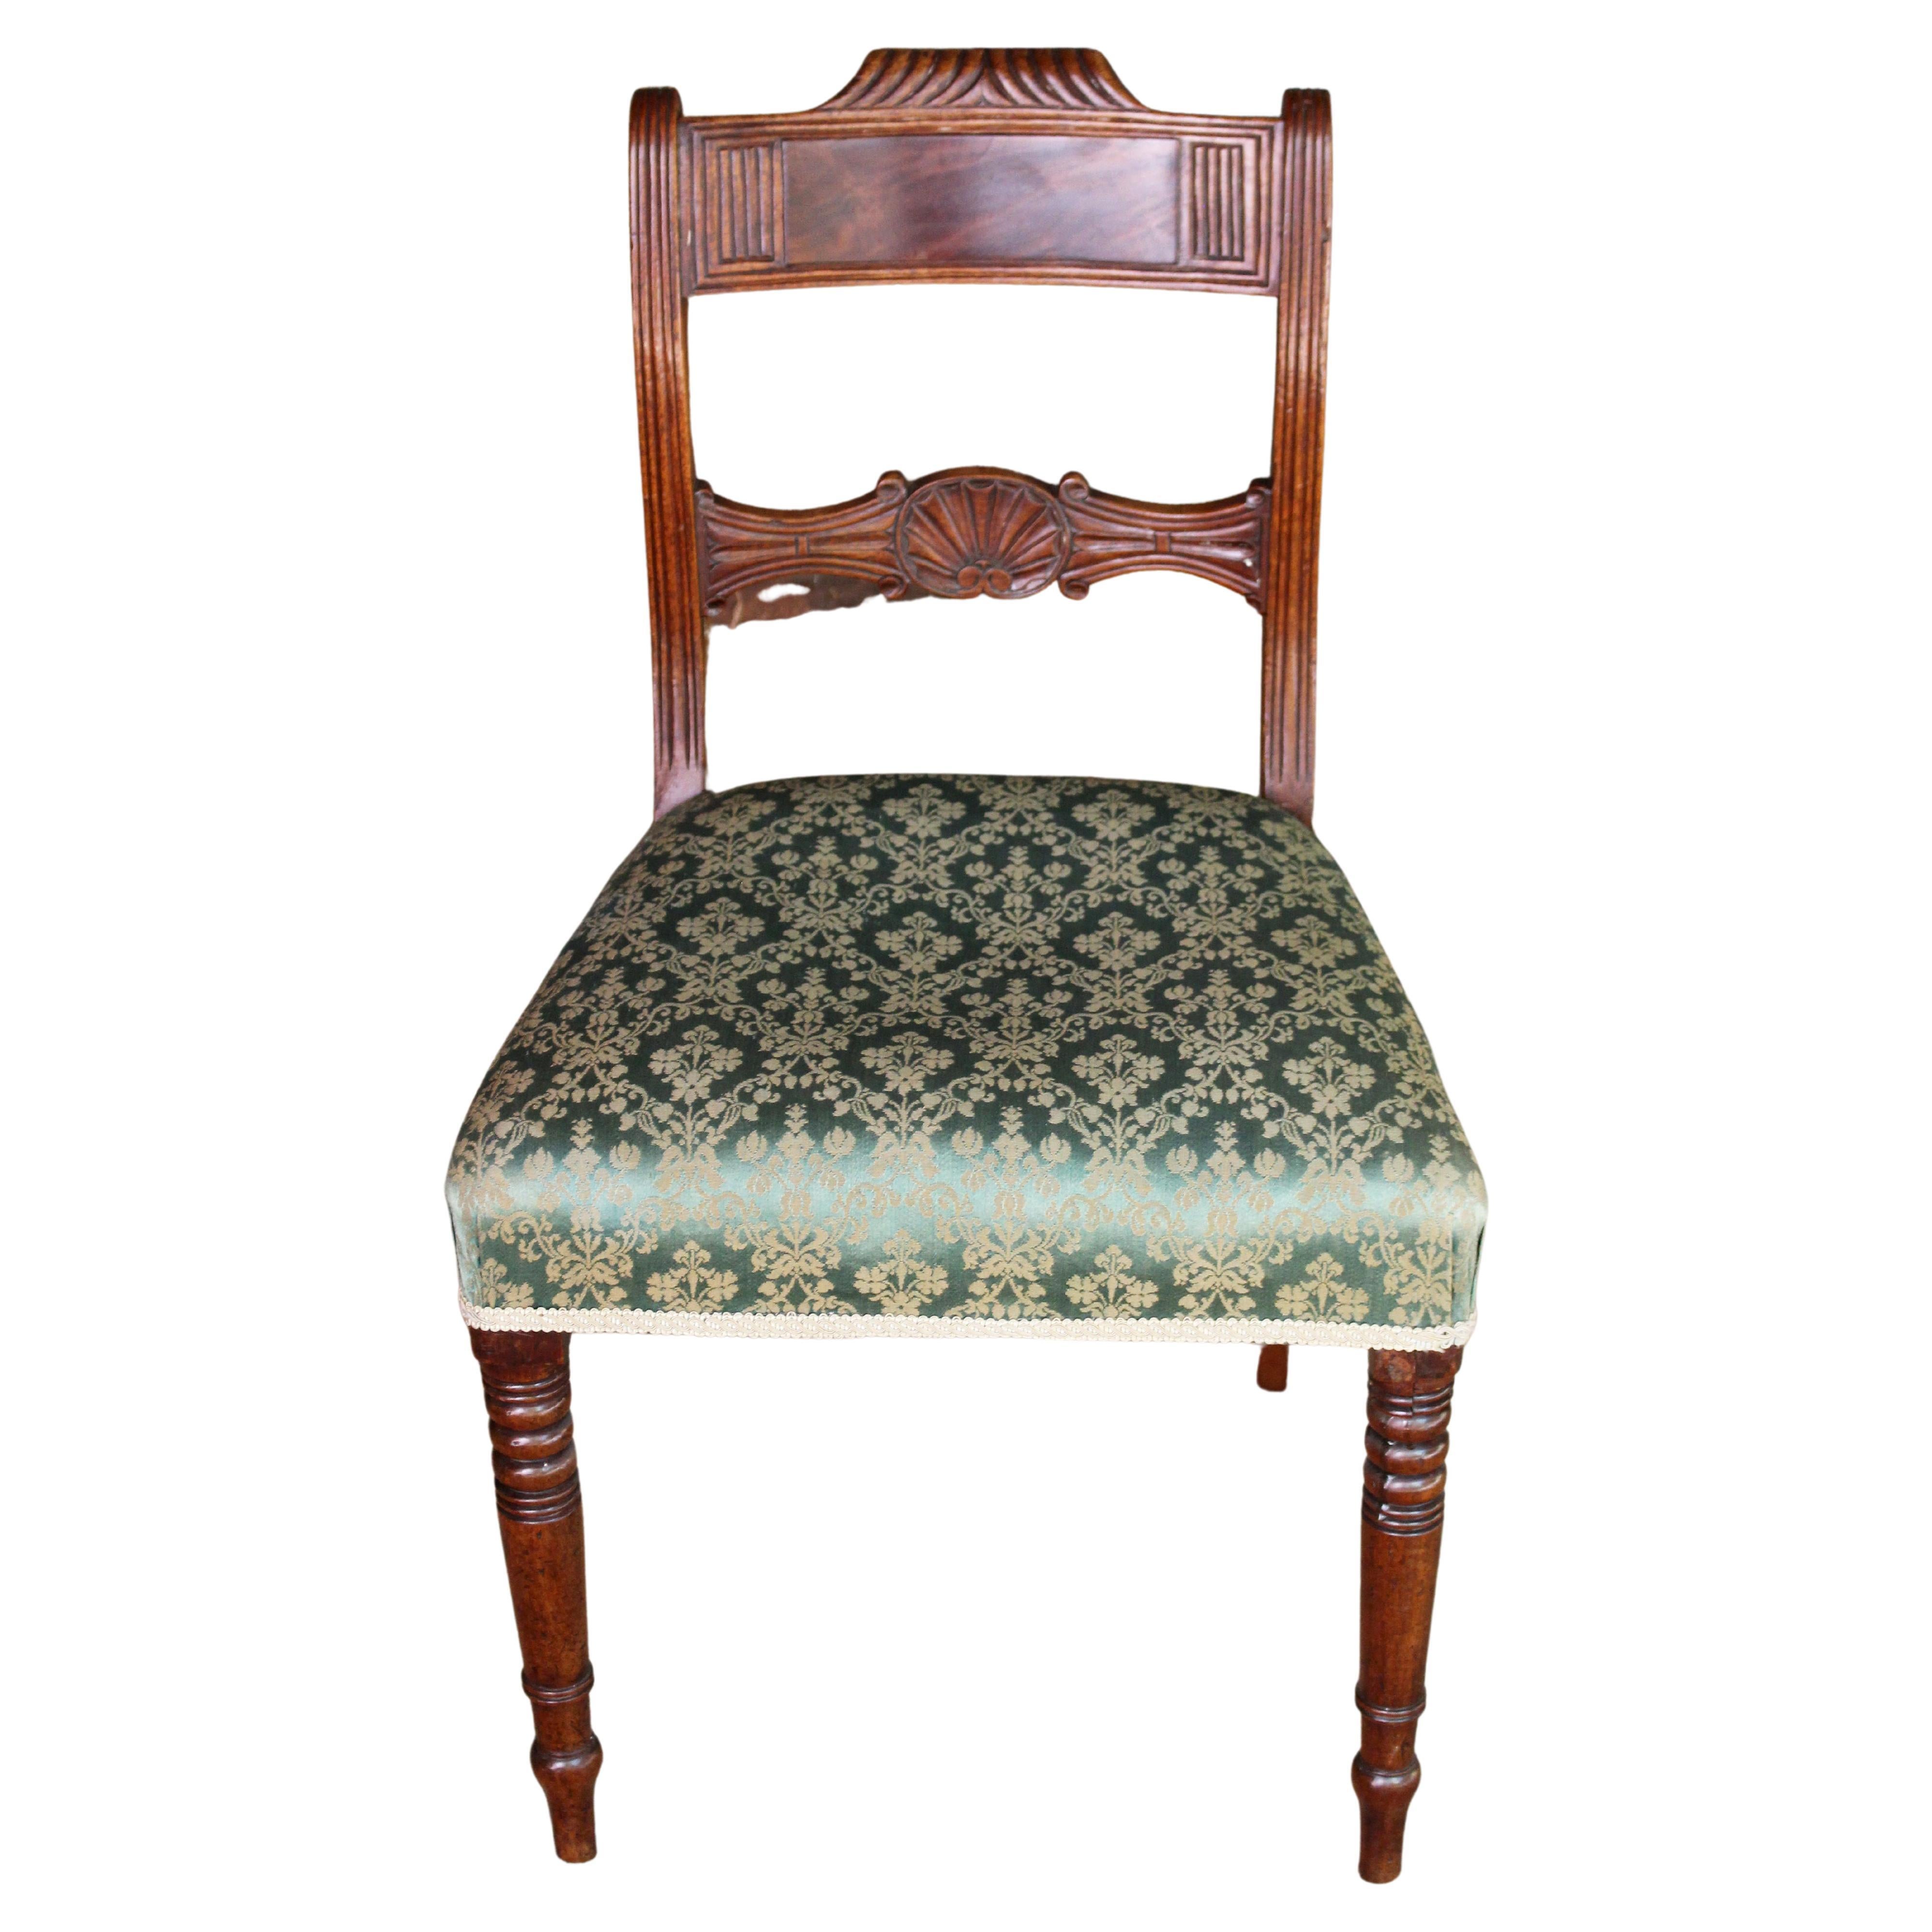 Circa 1805-15 Regency English Mahogany Side Chair